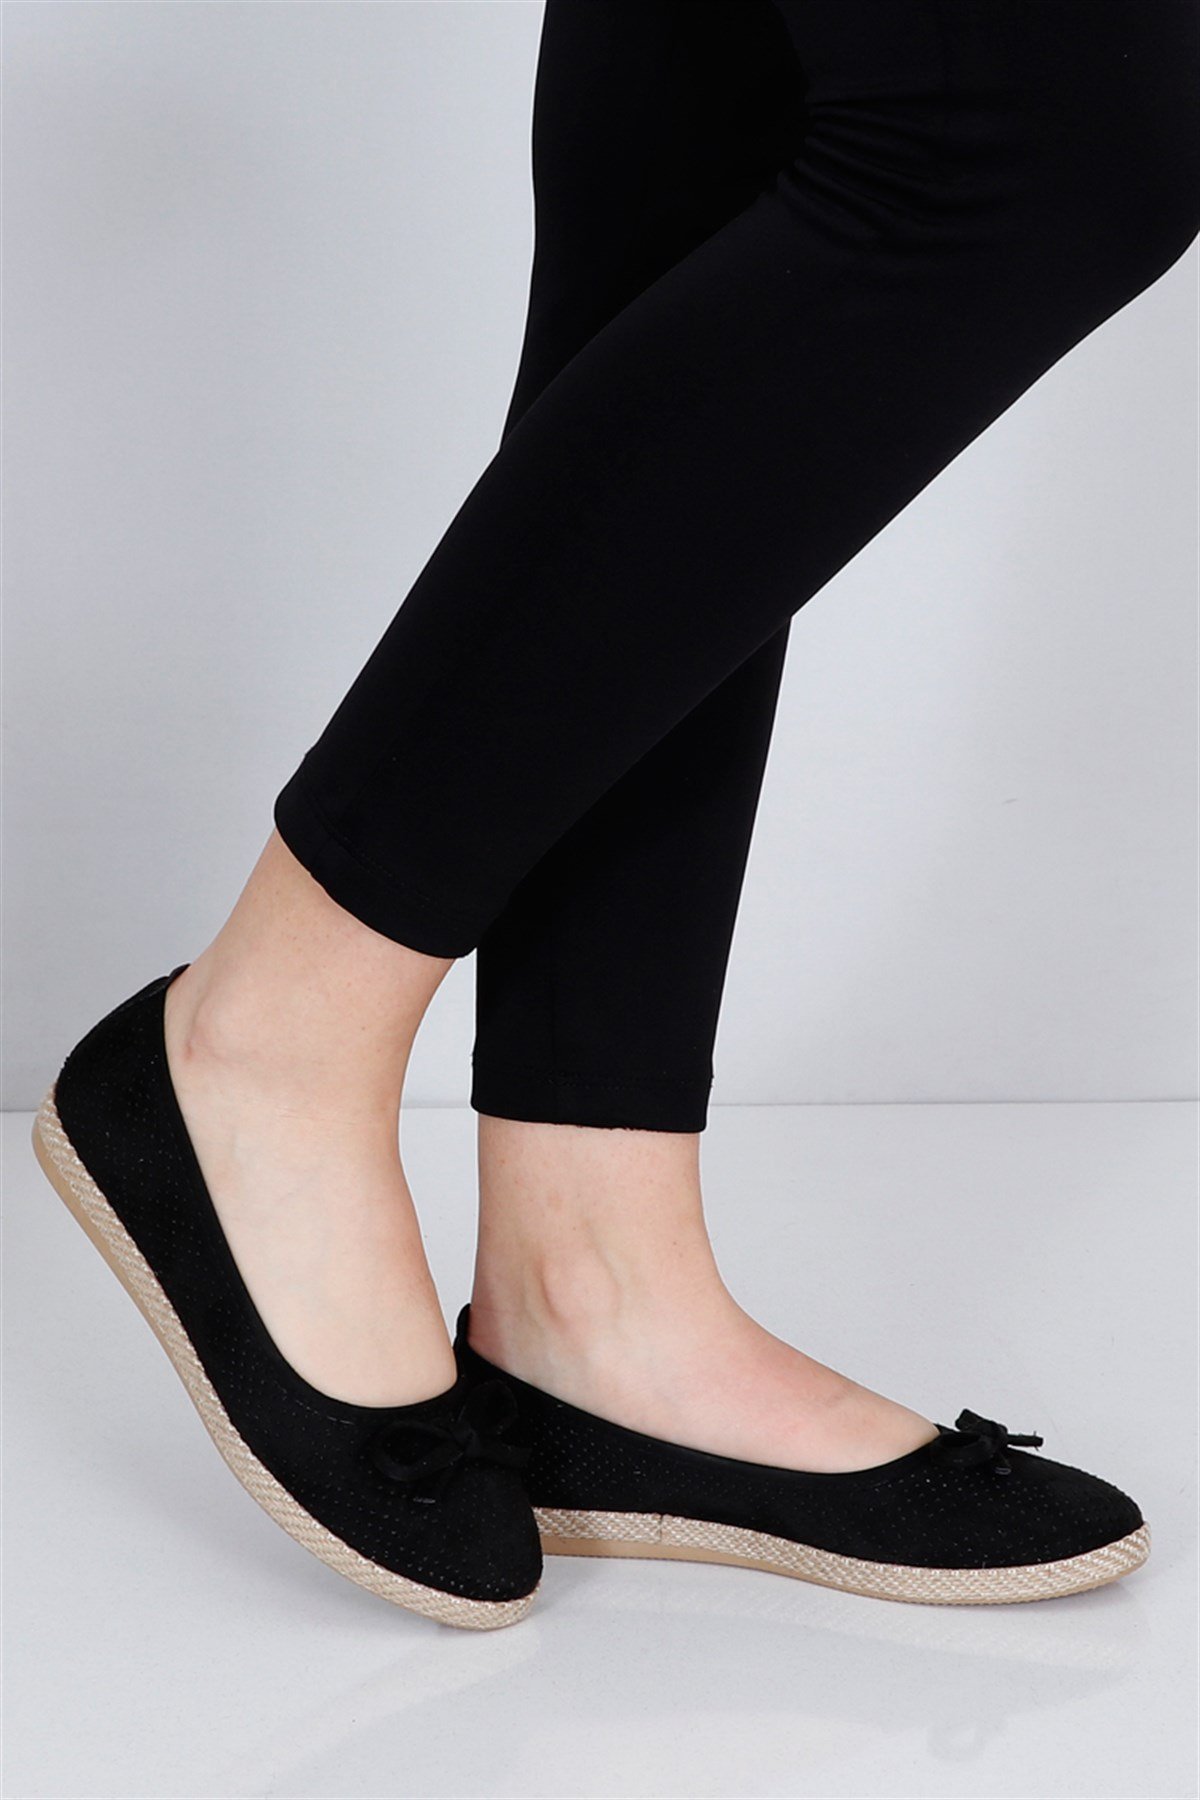 Siyah süet Kadın Babet Ayakkabı Fiyonklu 01 Fiyatı ve Modelleri